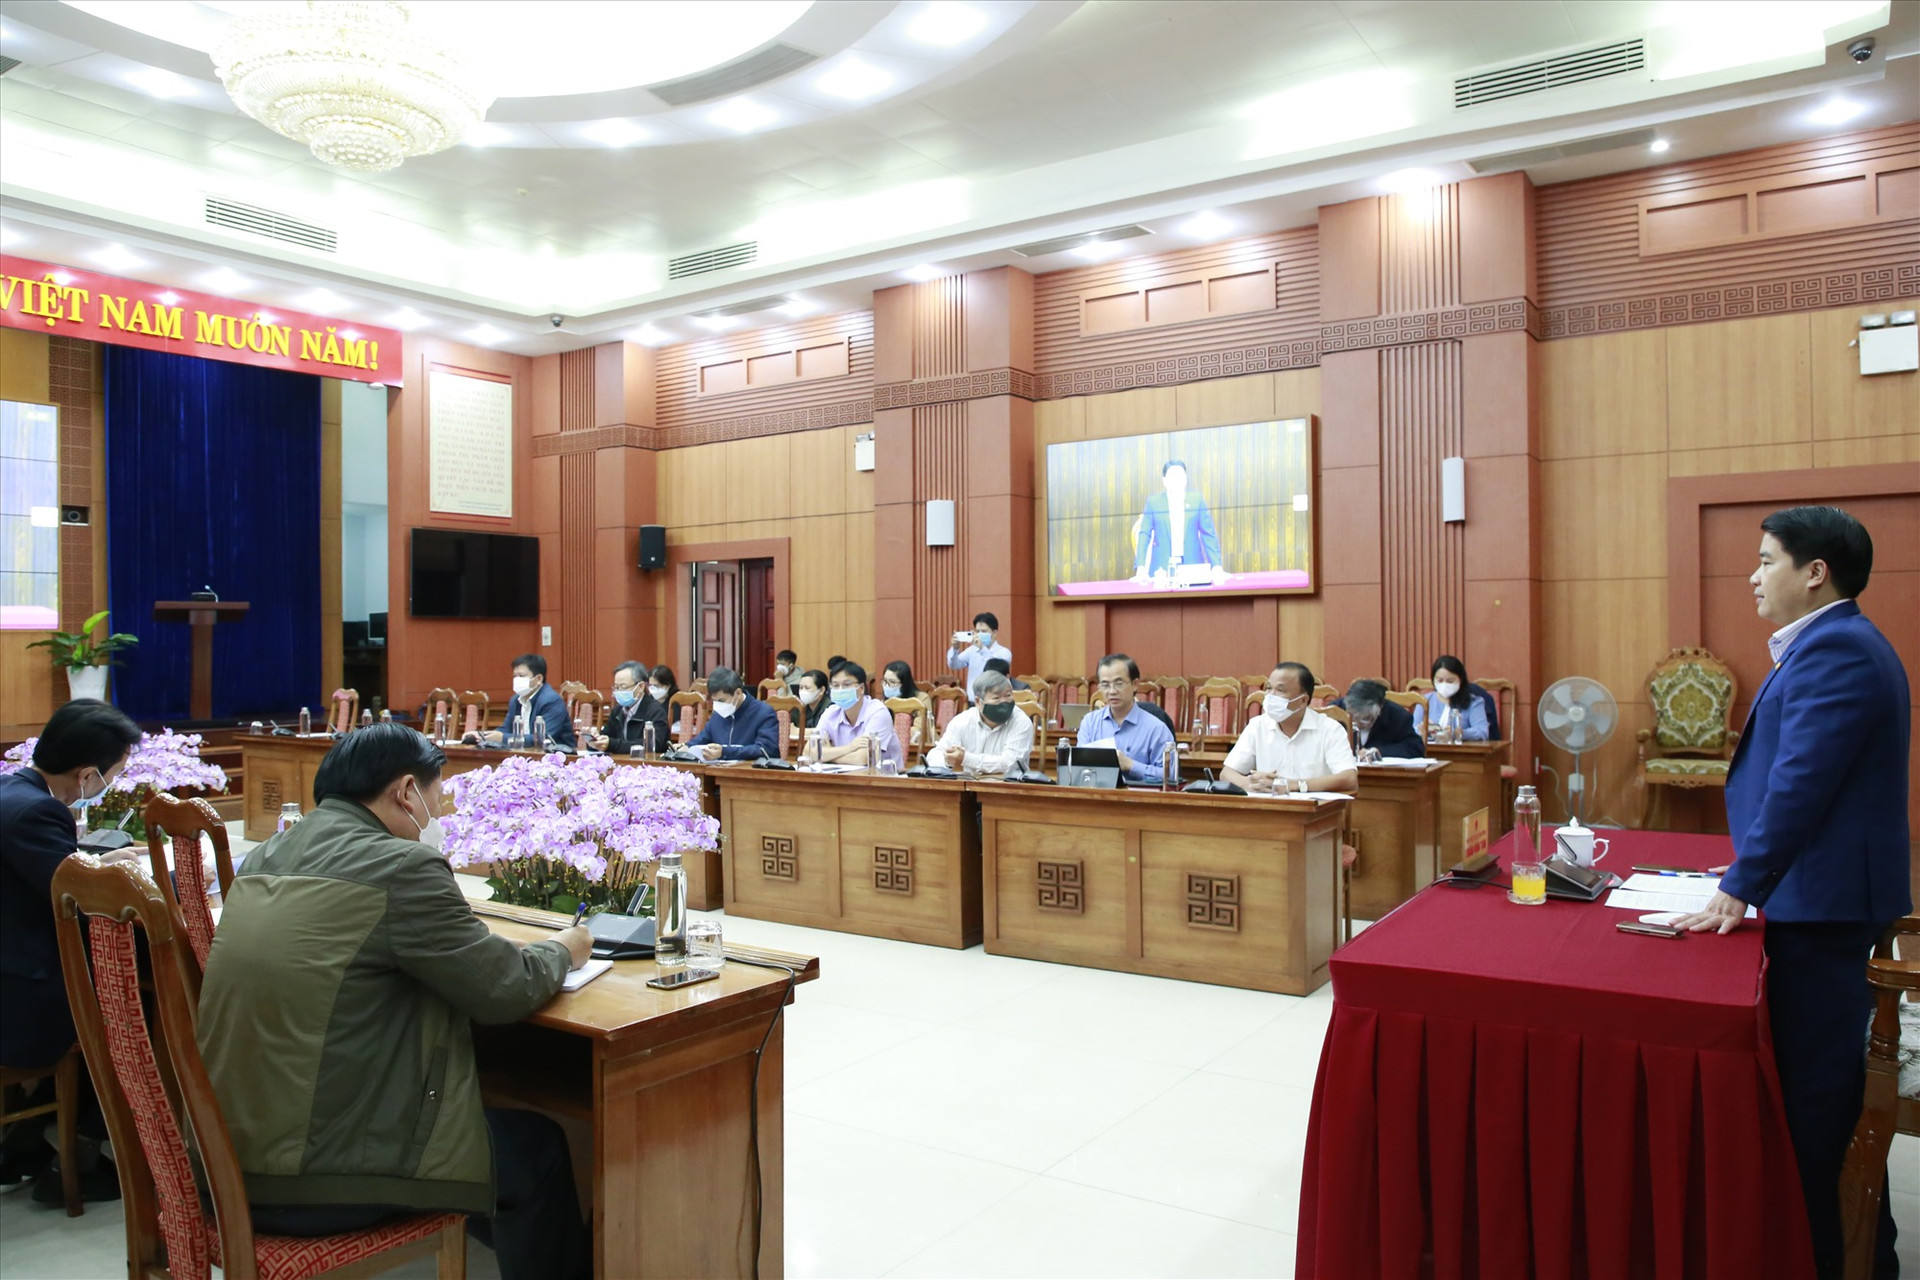 Phó Chủ tịch UBND tỉnh Trần Văn Tân chủ trì hội nghị trực tuyến. Ảnh: T.C